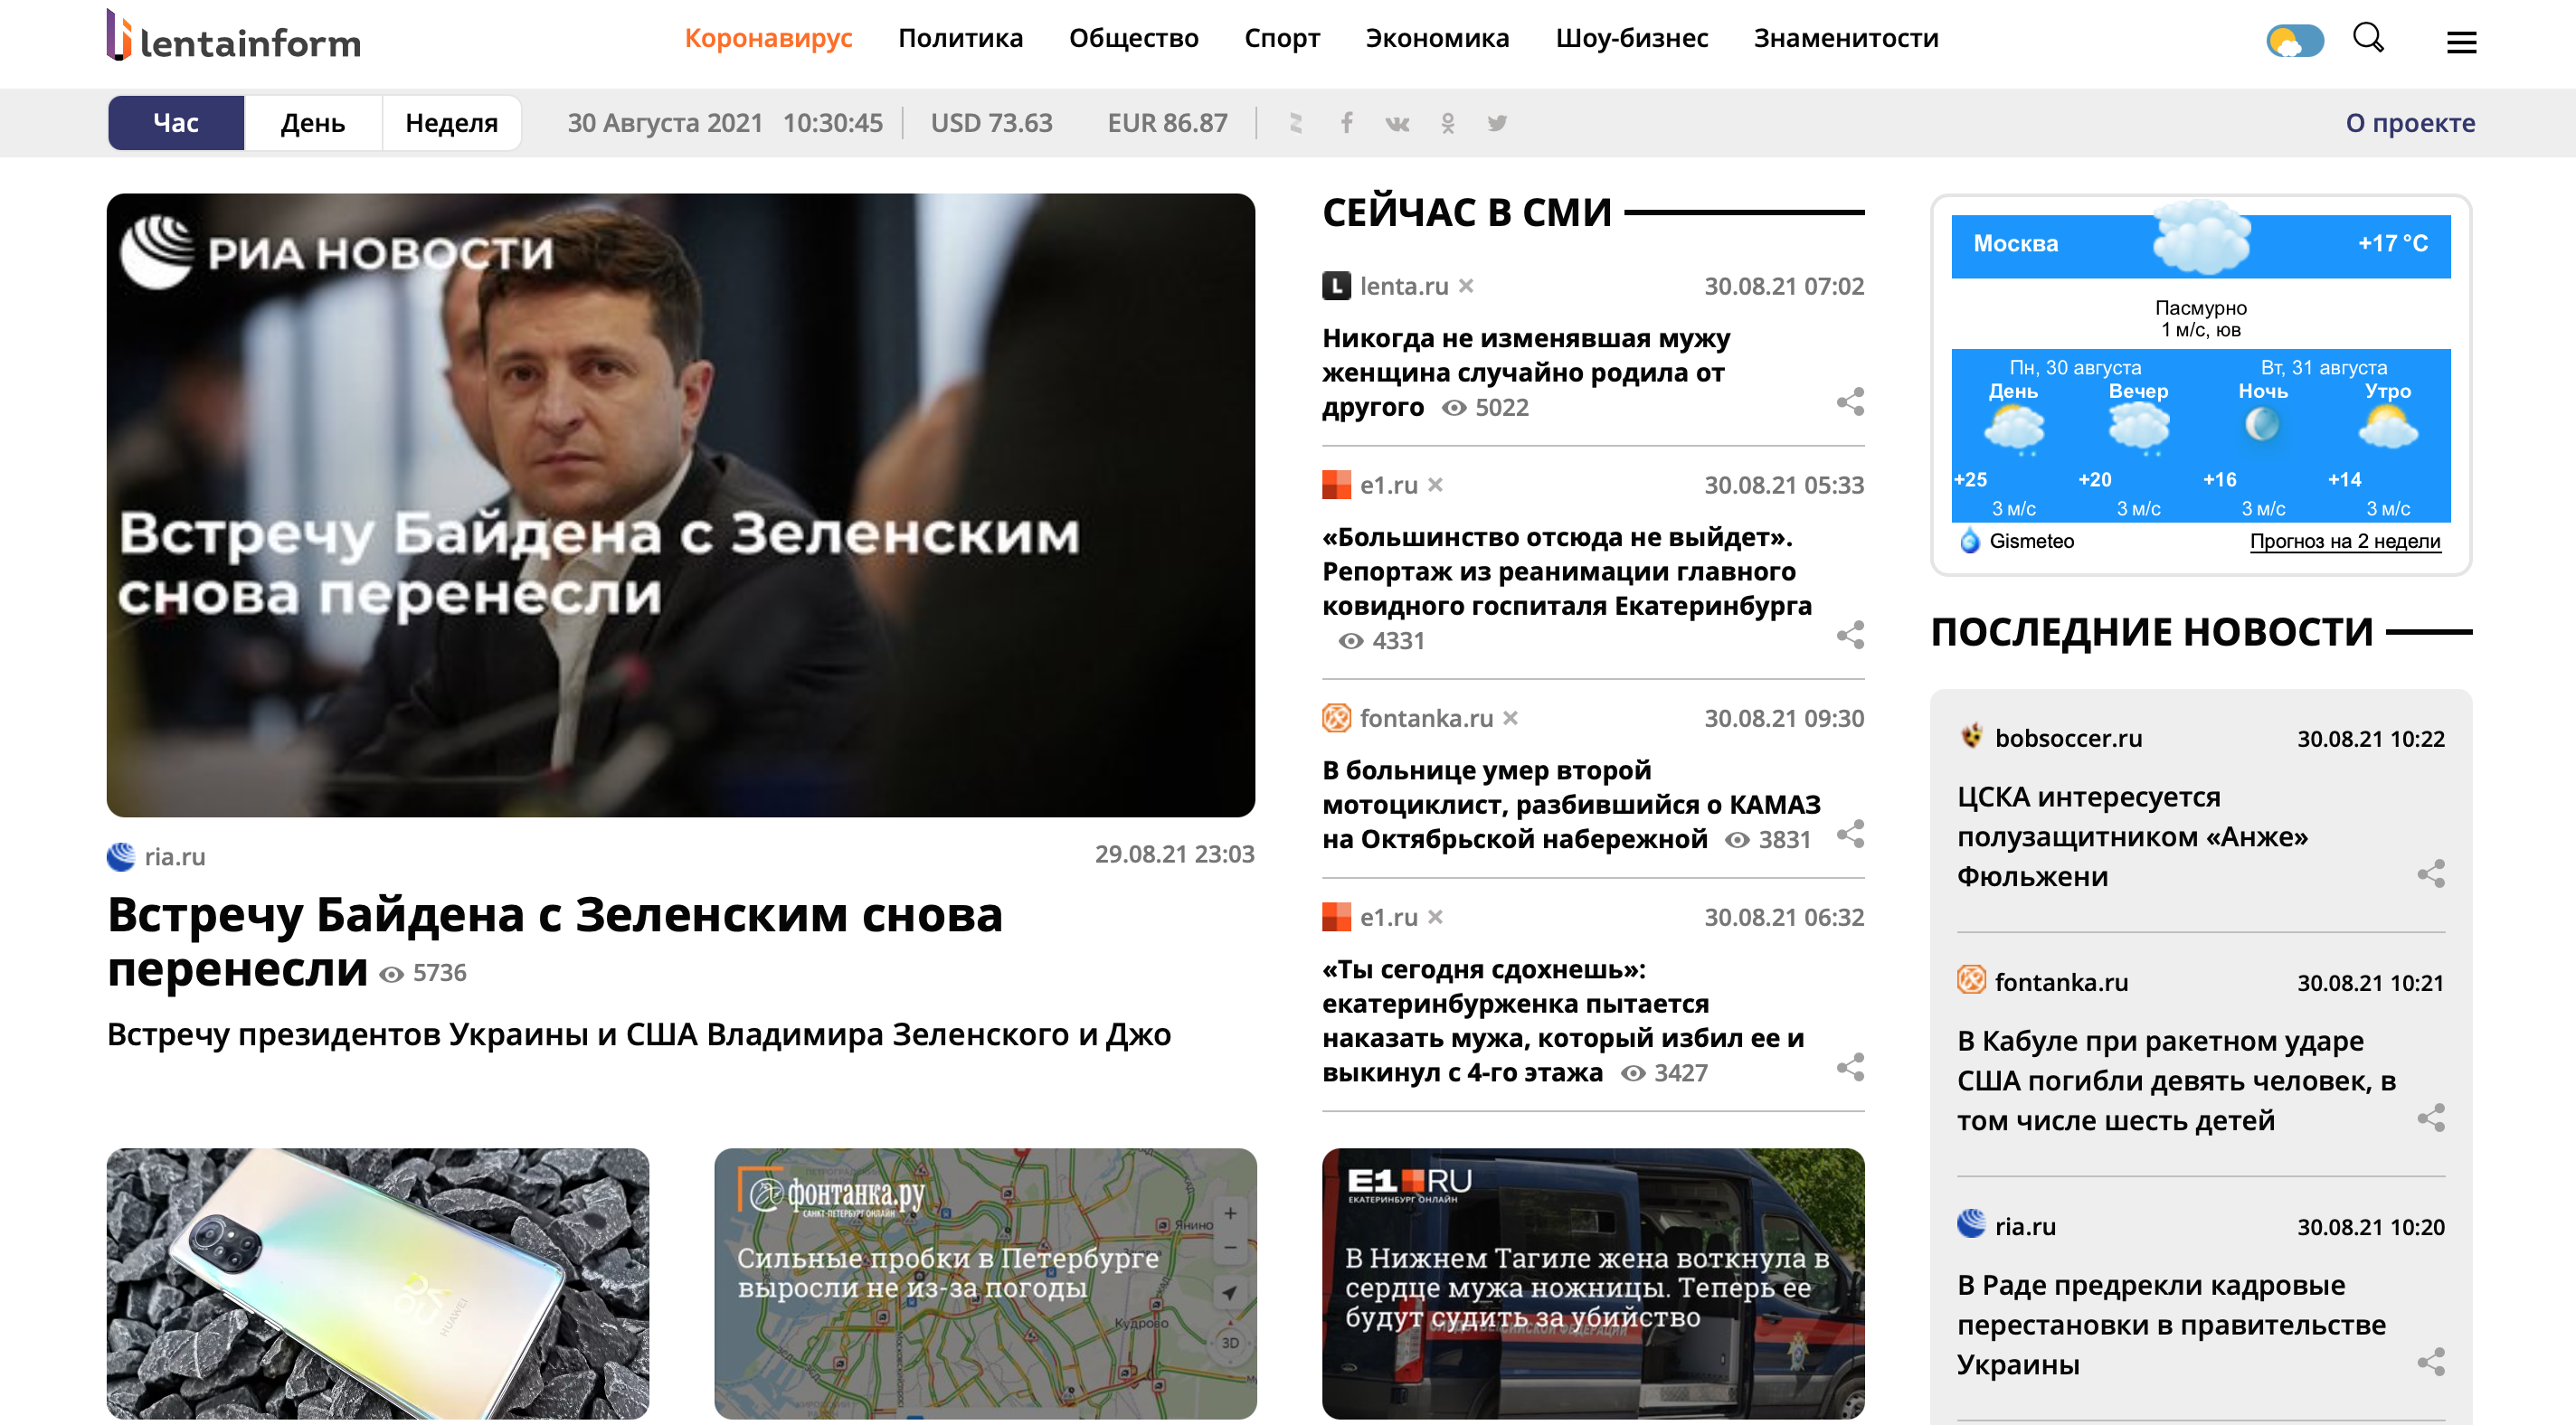 Сми2 новостной агрегатор все главные украина. Лента информ ру. Сми2 новостной агрегатор. Сми2 новостной агрегатор Украина. Конт новостной агрегатор.